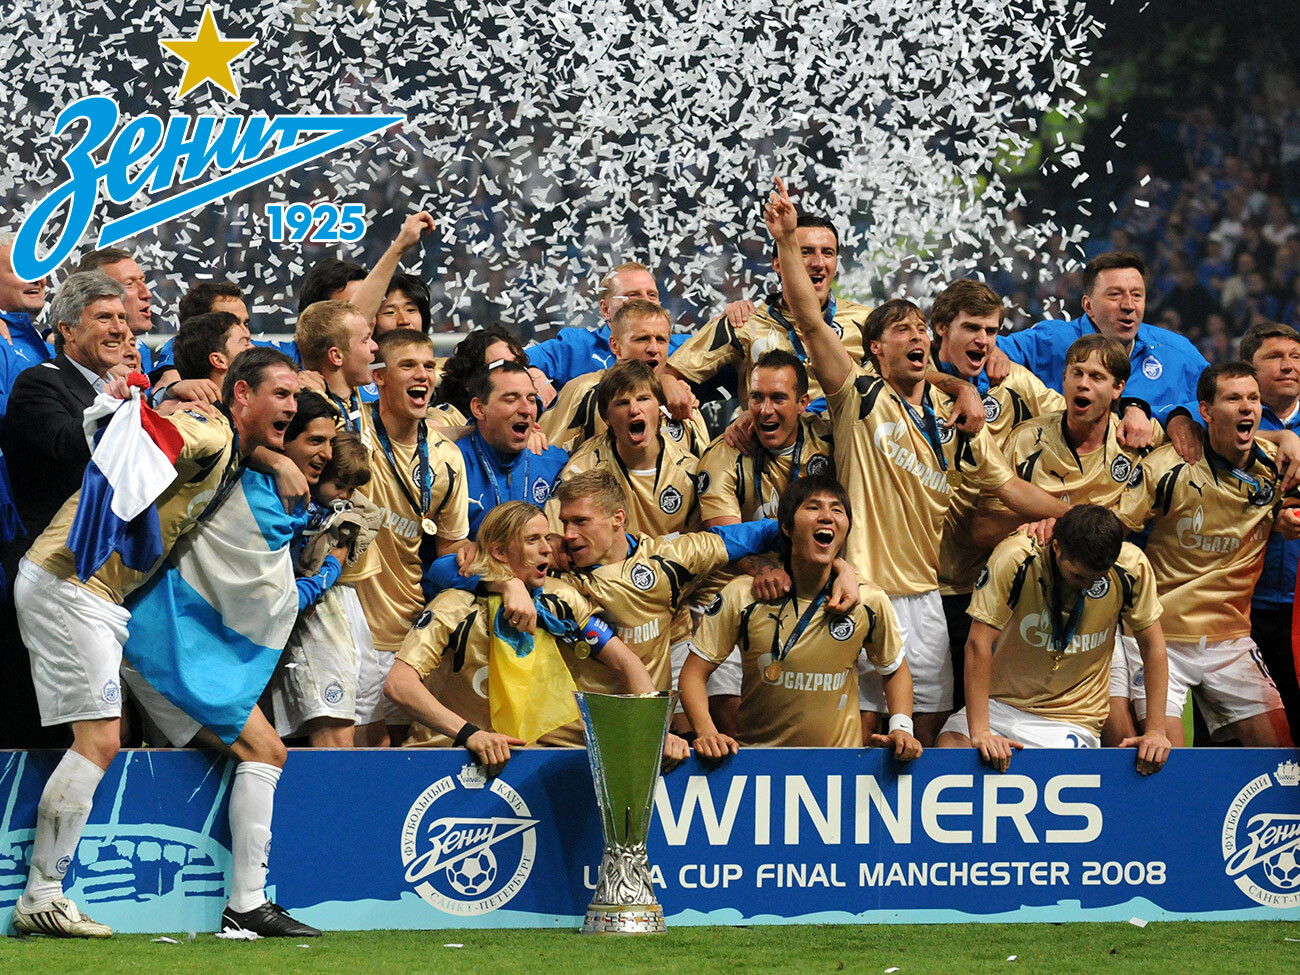 Igralci in osebje Zenita Sankt Peterburga praznujejo po podelitvi nagrad po finalu pokala UEFA med ekipami Zenit Sankt Peterburg in Glasgow Rangers na stadionu City of Manchester 14. maja 2008 v Manchestru, Anglija. 